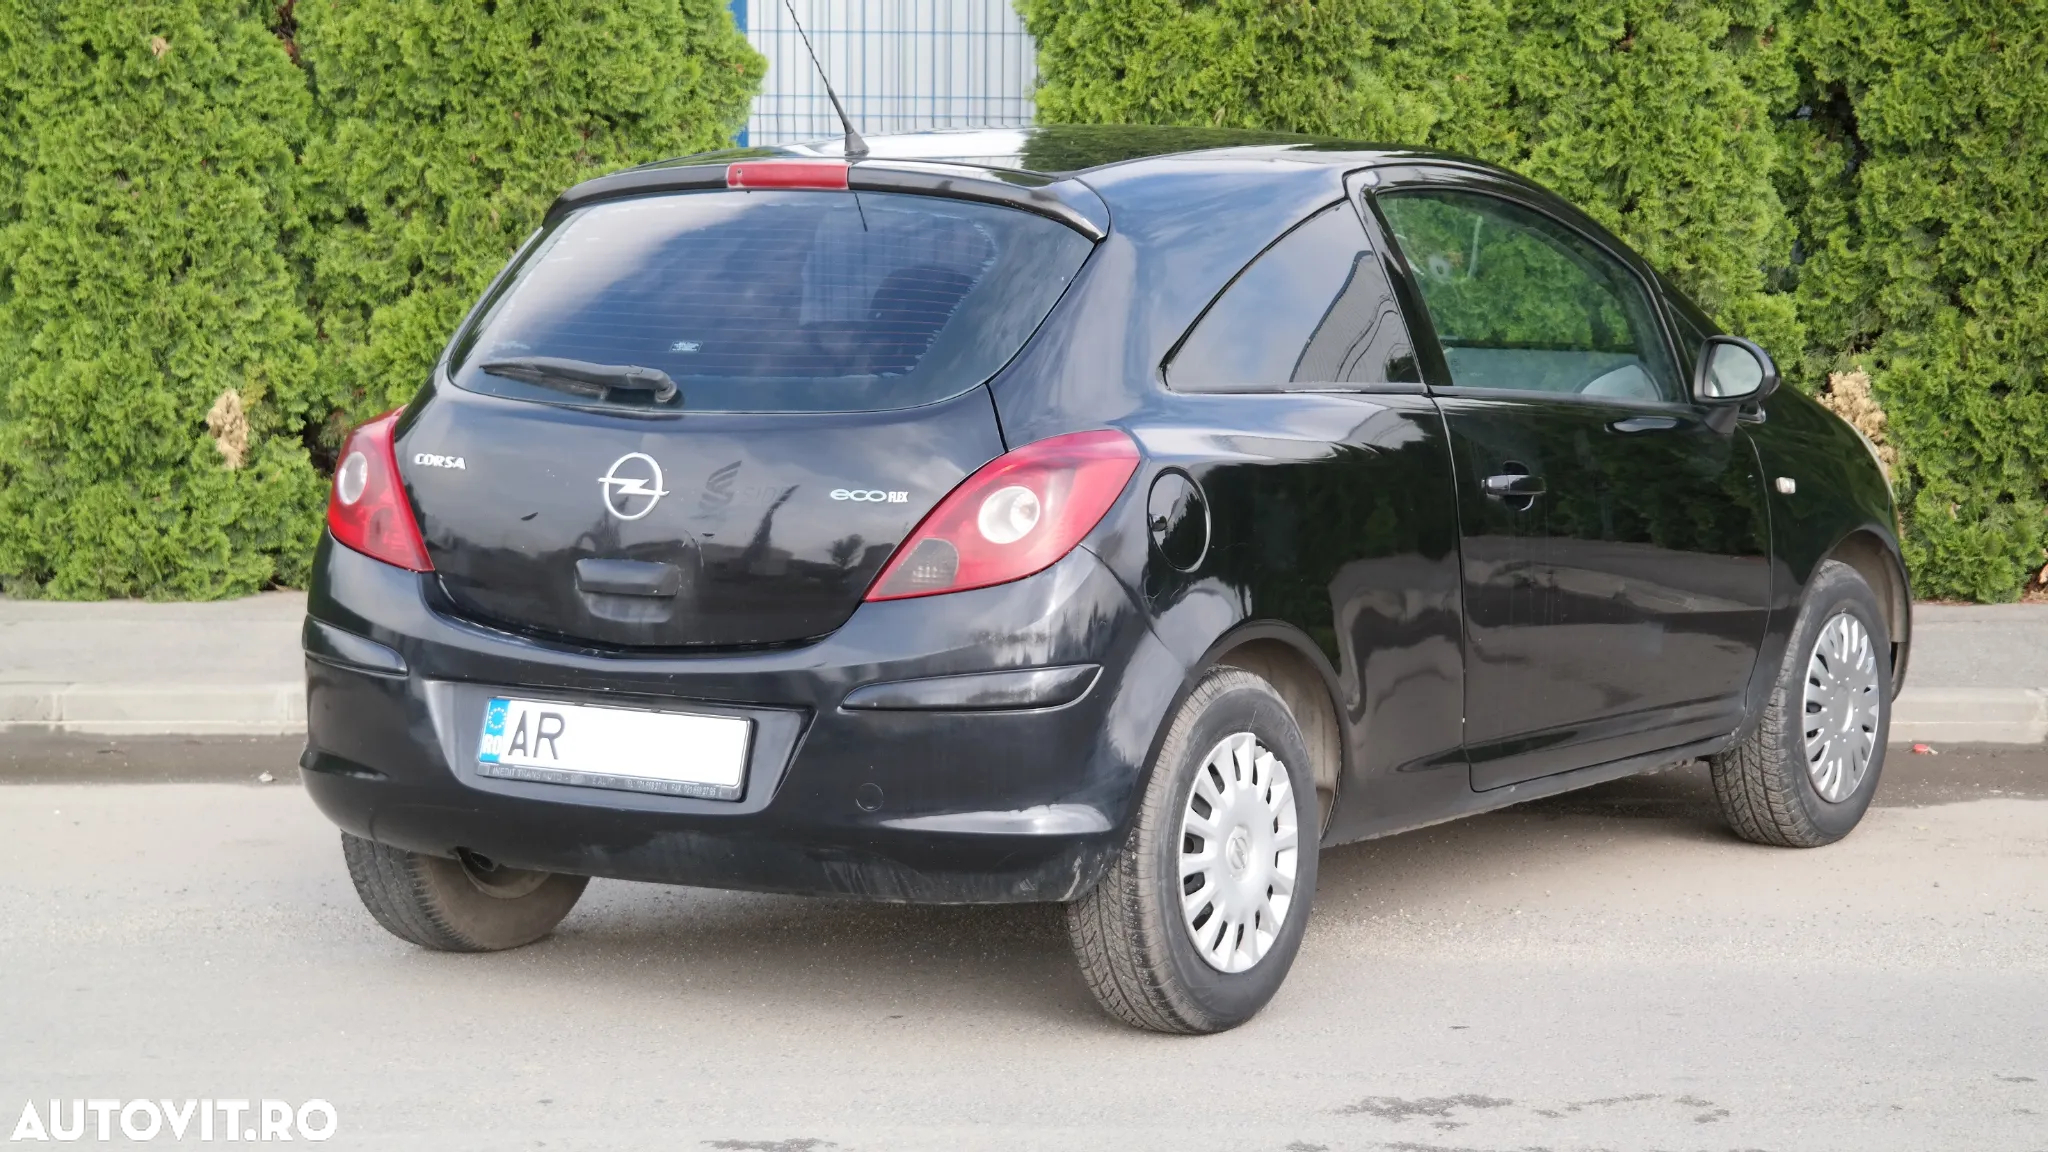 Opel Corsa 1.3 CDTI Active - 2